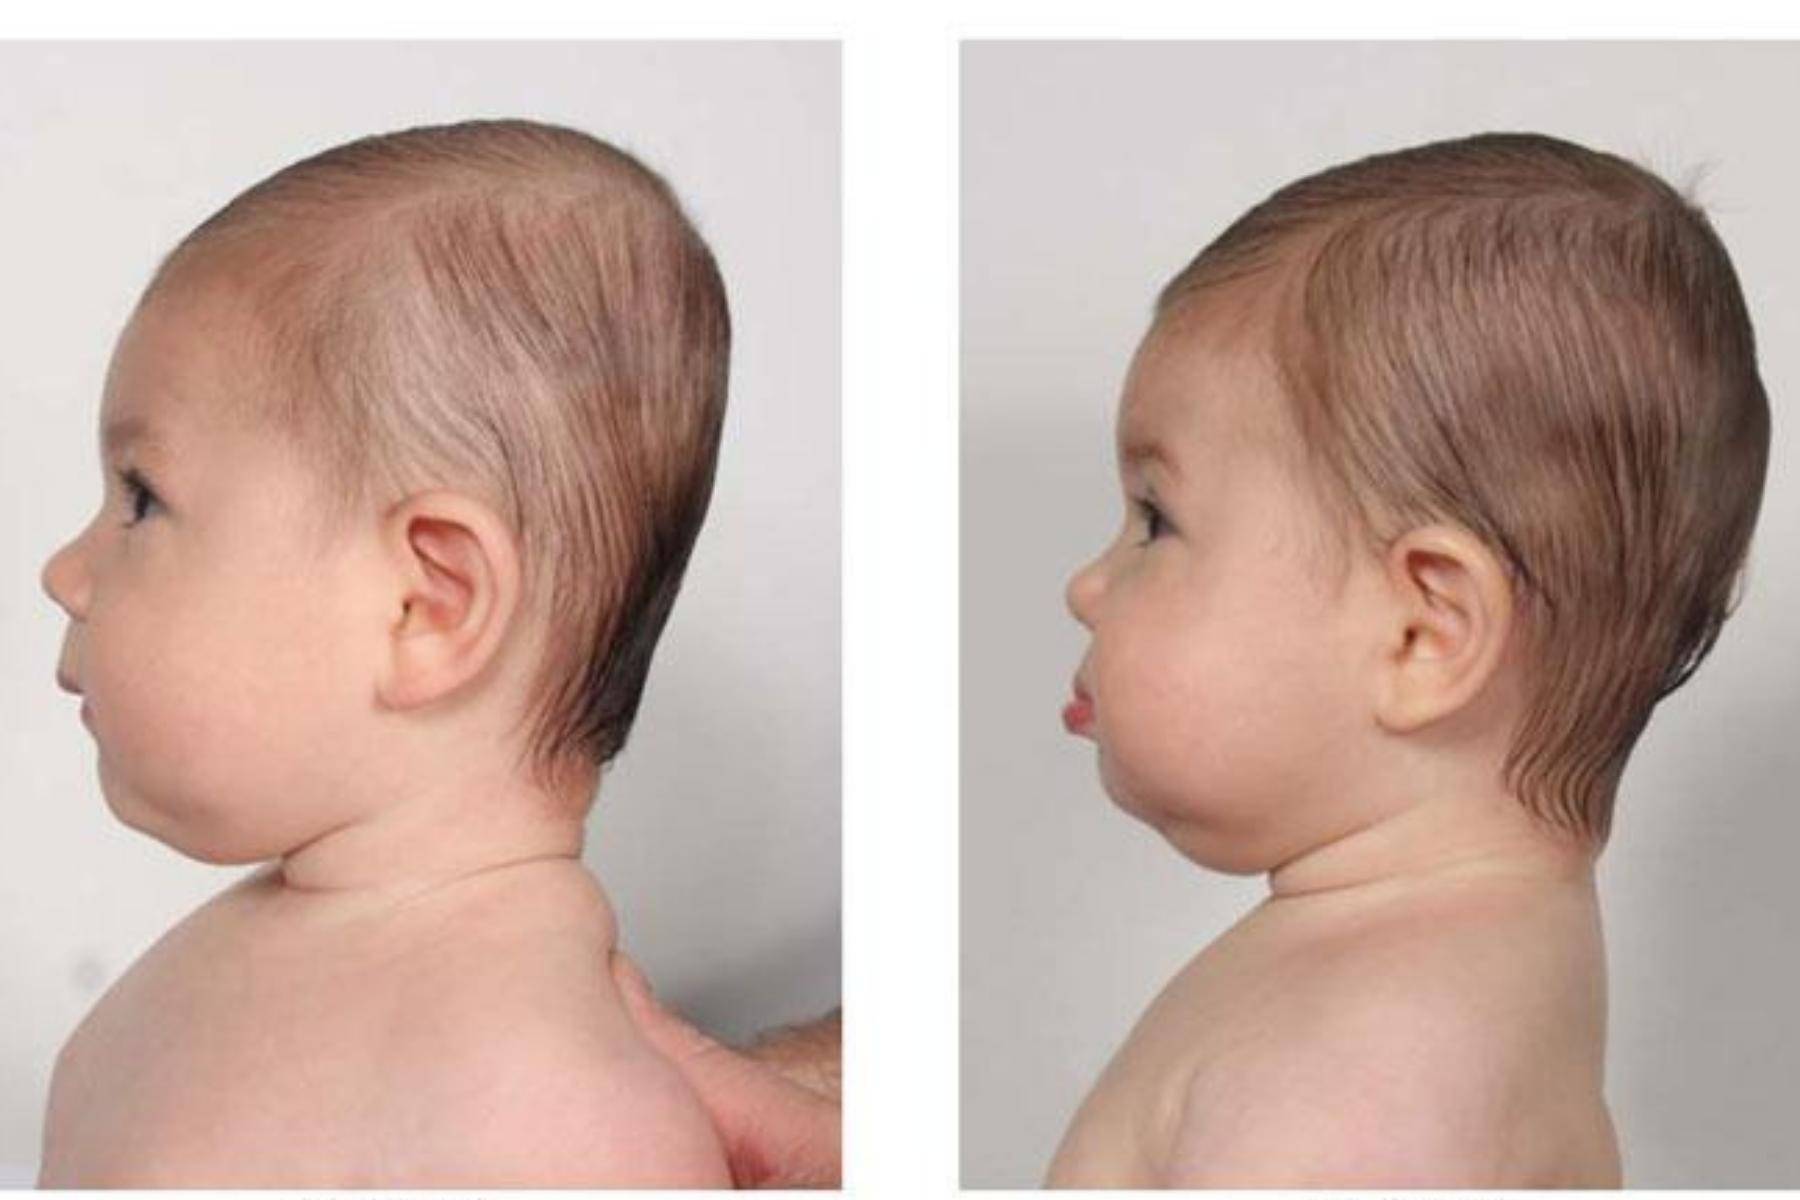 Плагиоцефалия у ребенка – неправильная форма черепа у грудничка